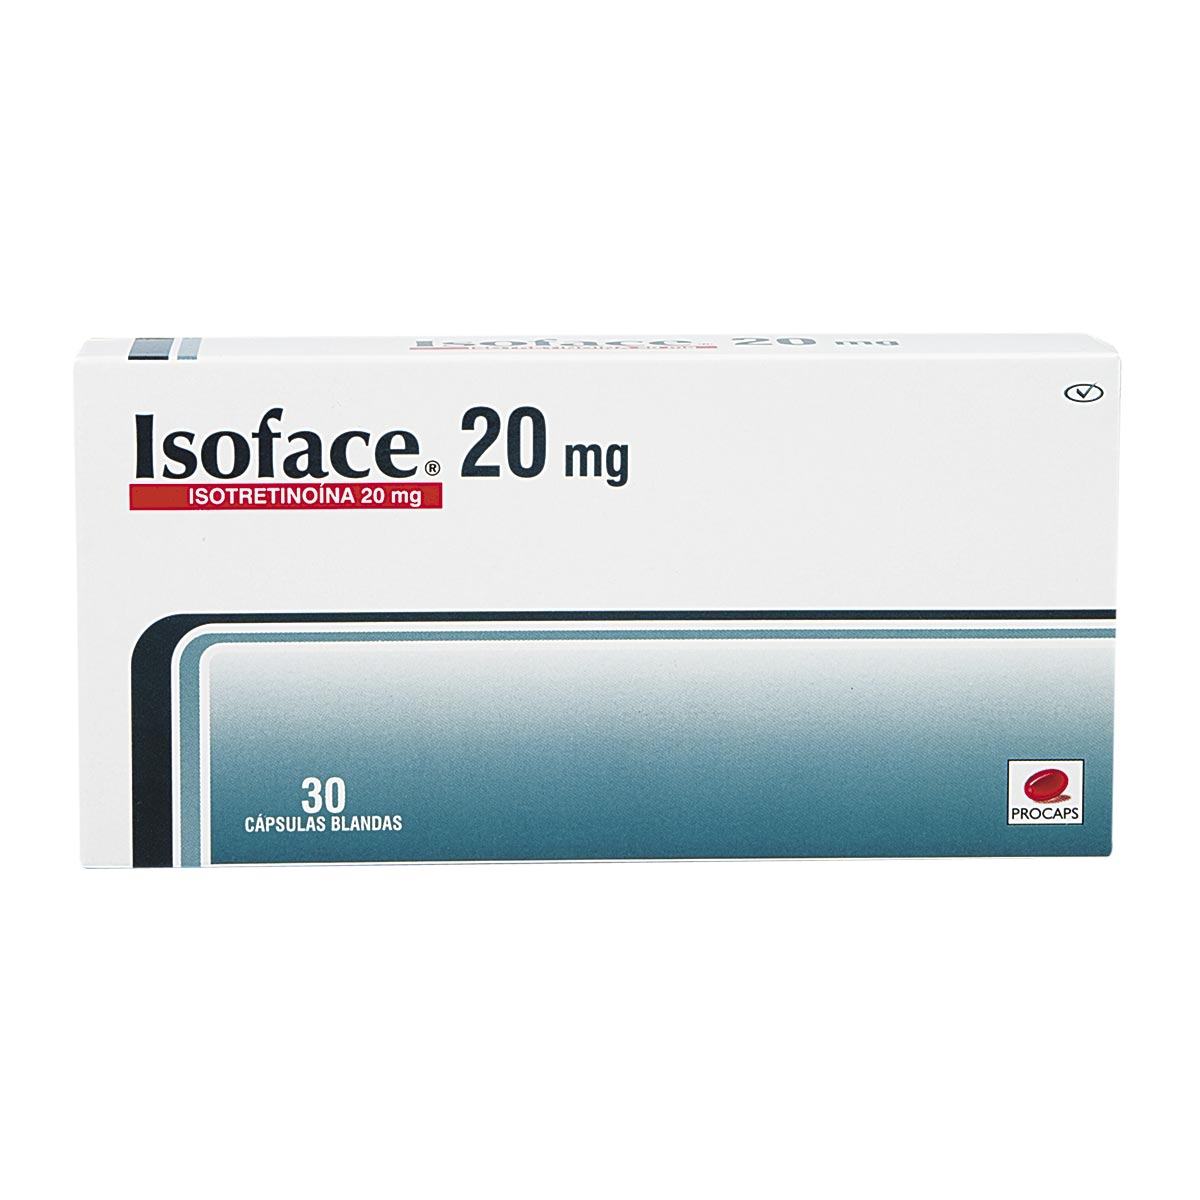 Isotretinoina 20 mg donde comprar